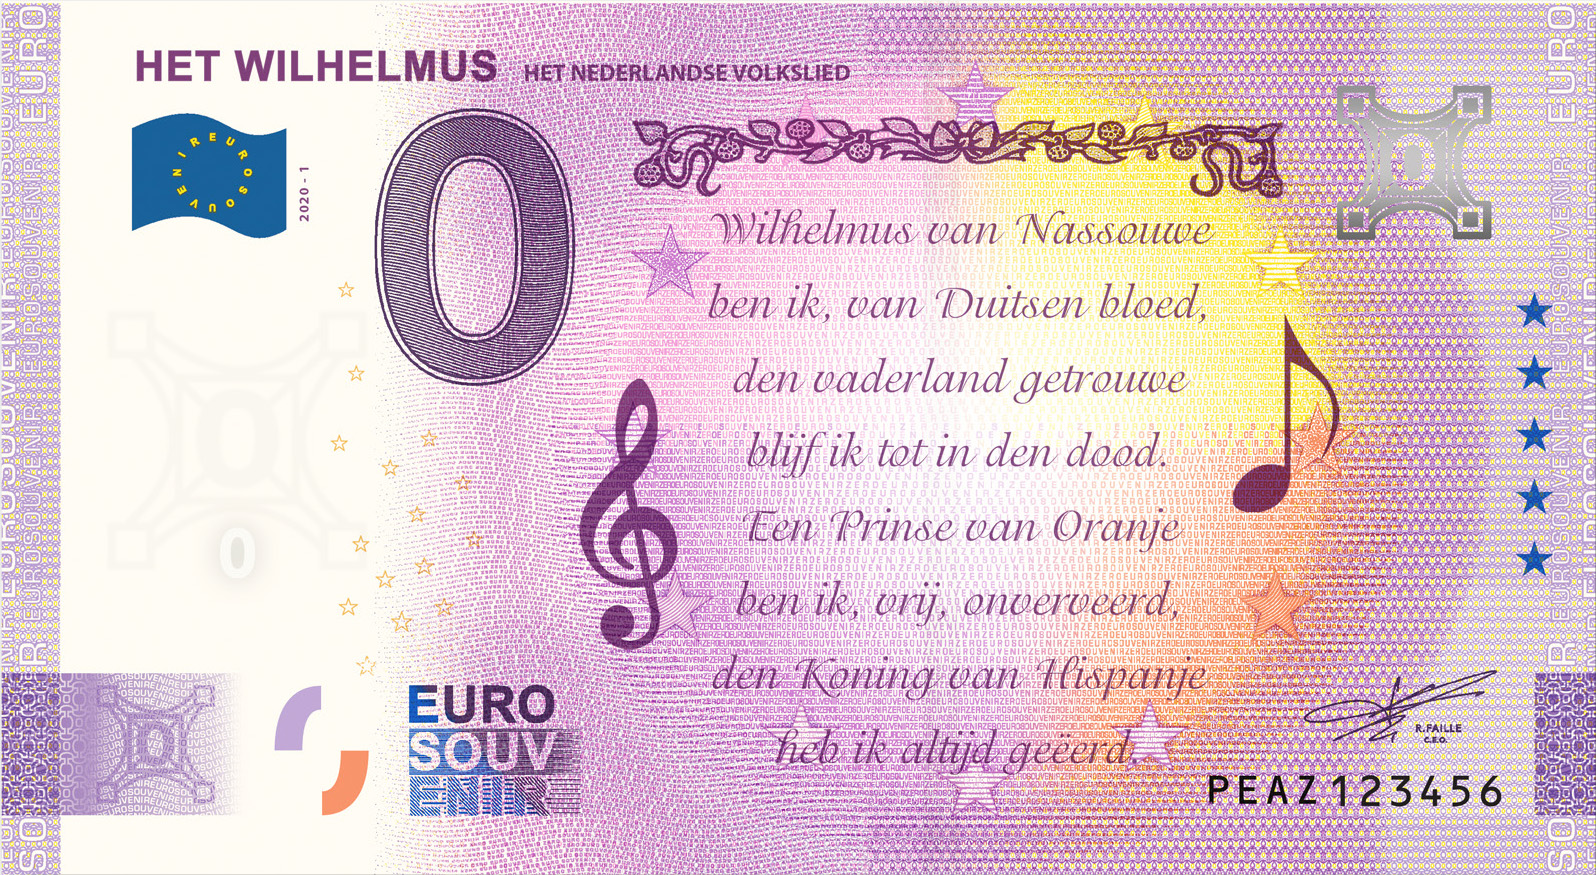 0 Euro souvenir note Nederland 2020 - Het Wilhelmus